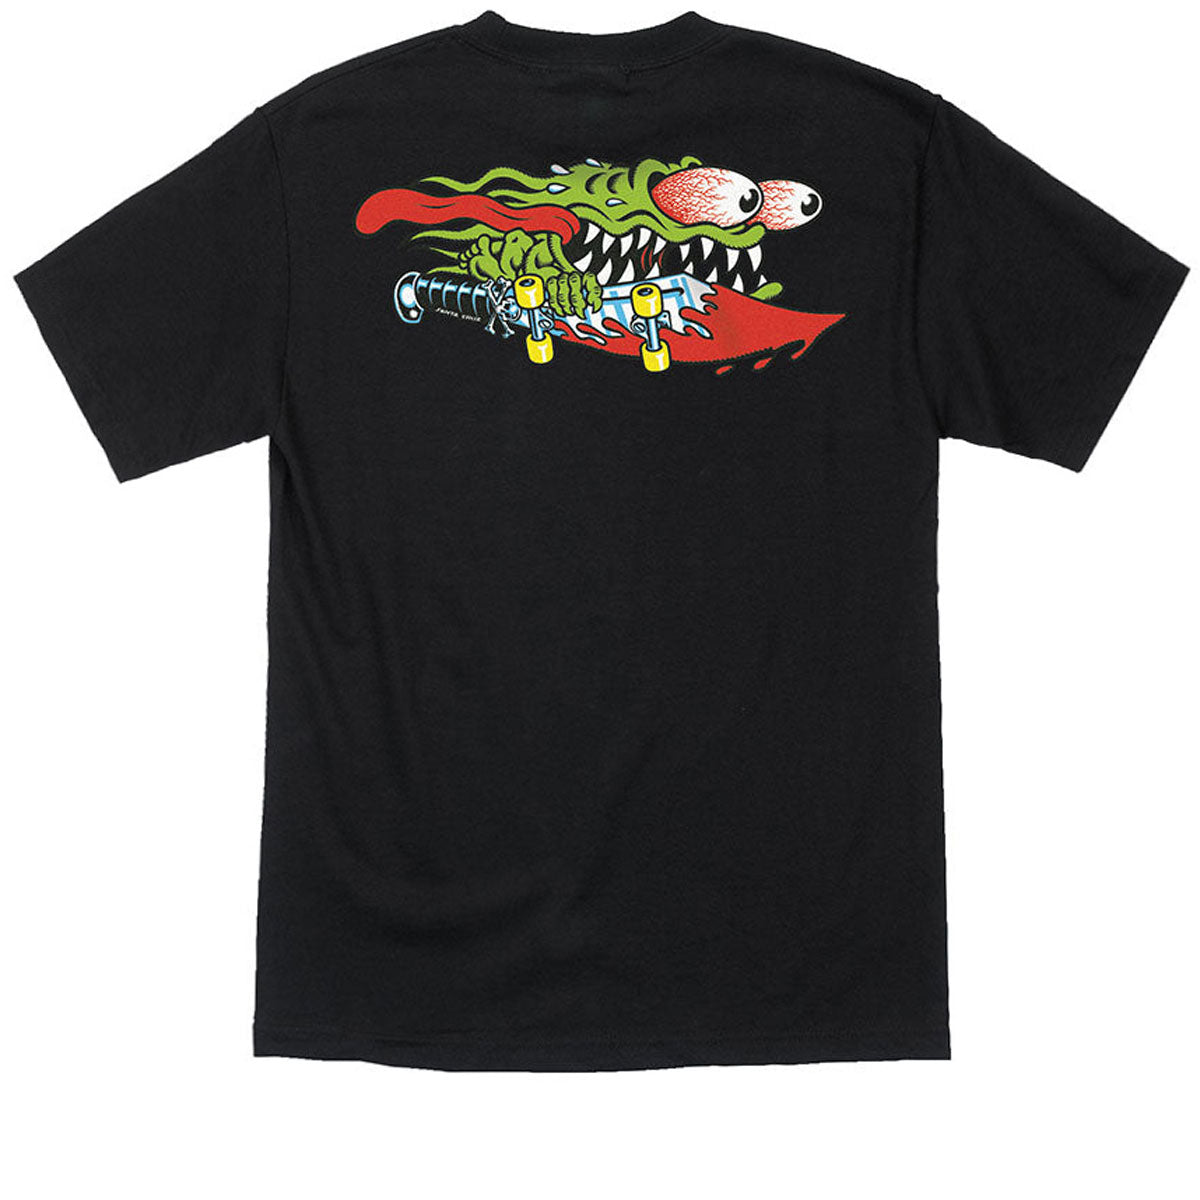 Santa Cruz Meek Slasher T-Shirt - Black image 1